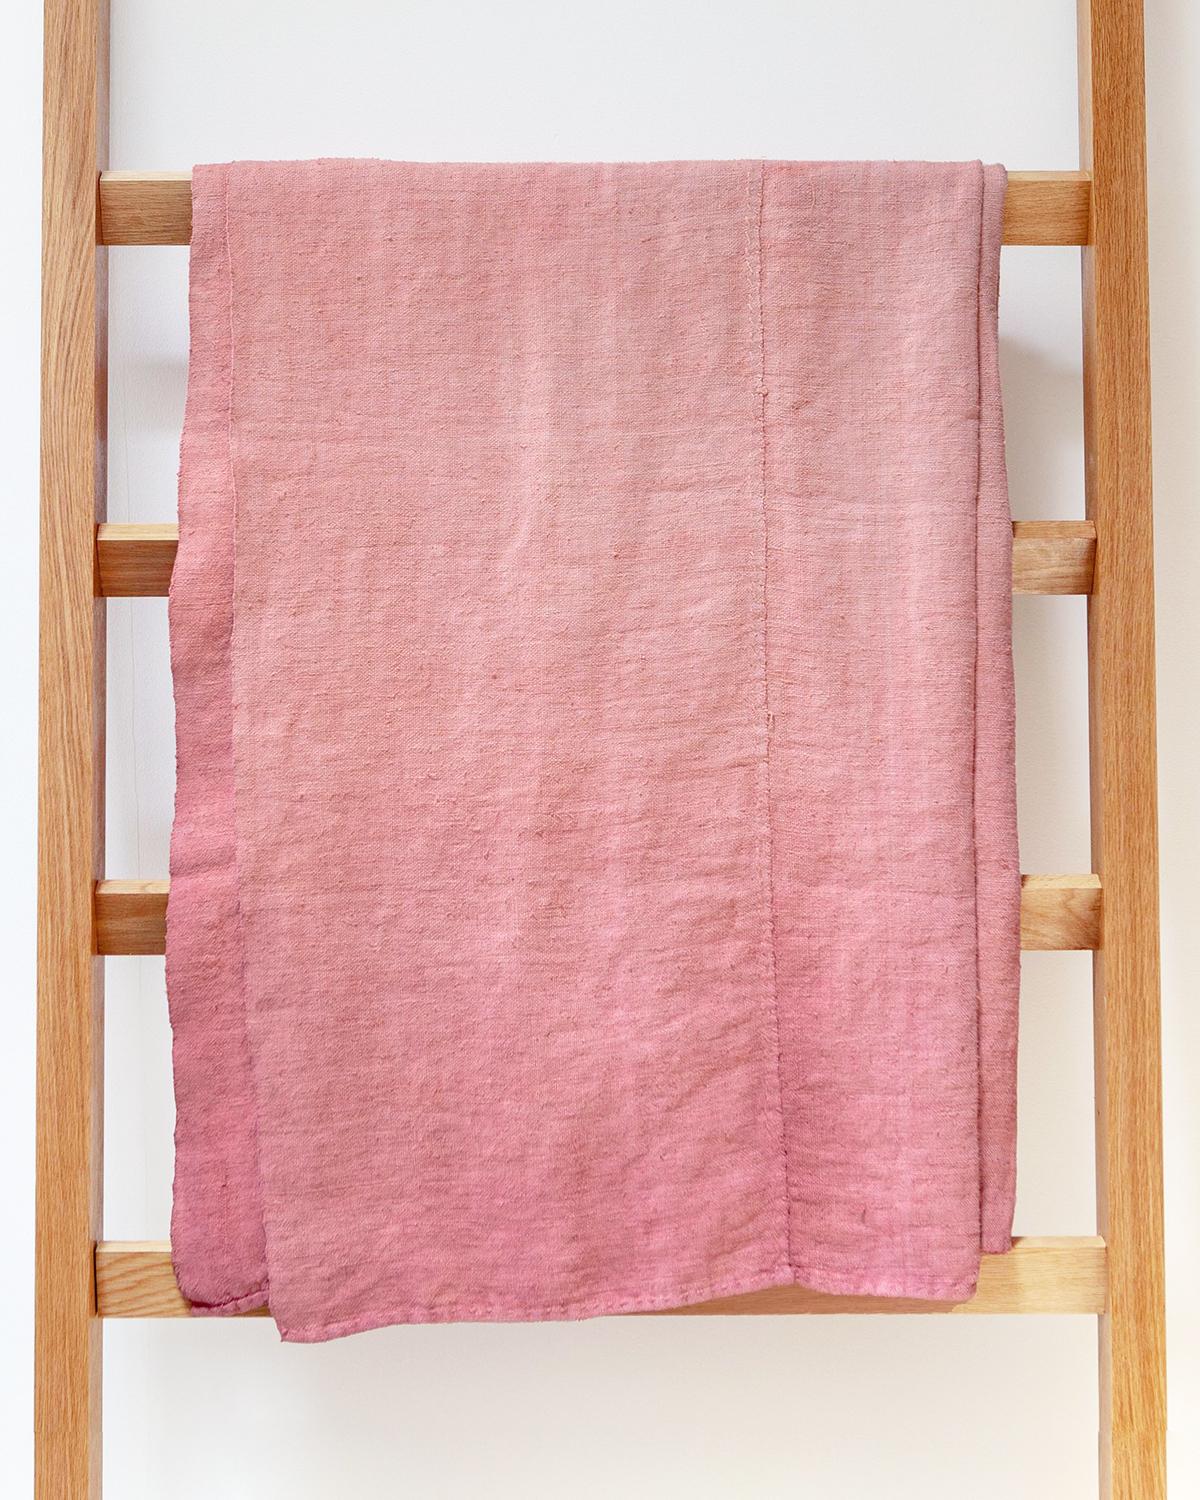 Ein dezentes rosa ombre Tuch für Ihr Schlafzimmer. Diese Decke aus Leinen im Vintage-Stil ist von Hand in einem schönen Rosaton bemalt und mit rustikalen Details versehen, die eine subtile und dennoch gemütliche Atmosphäre schaffen. Diese rustikale